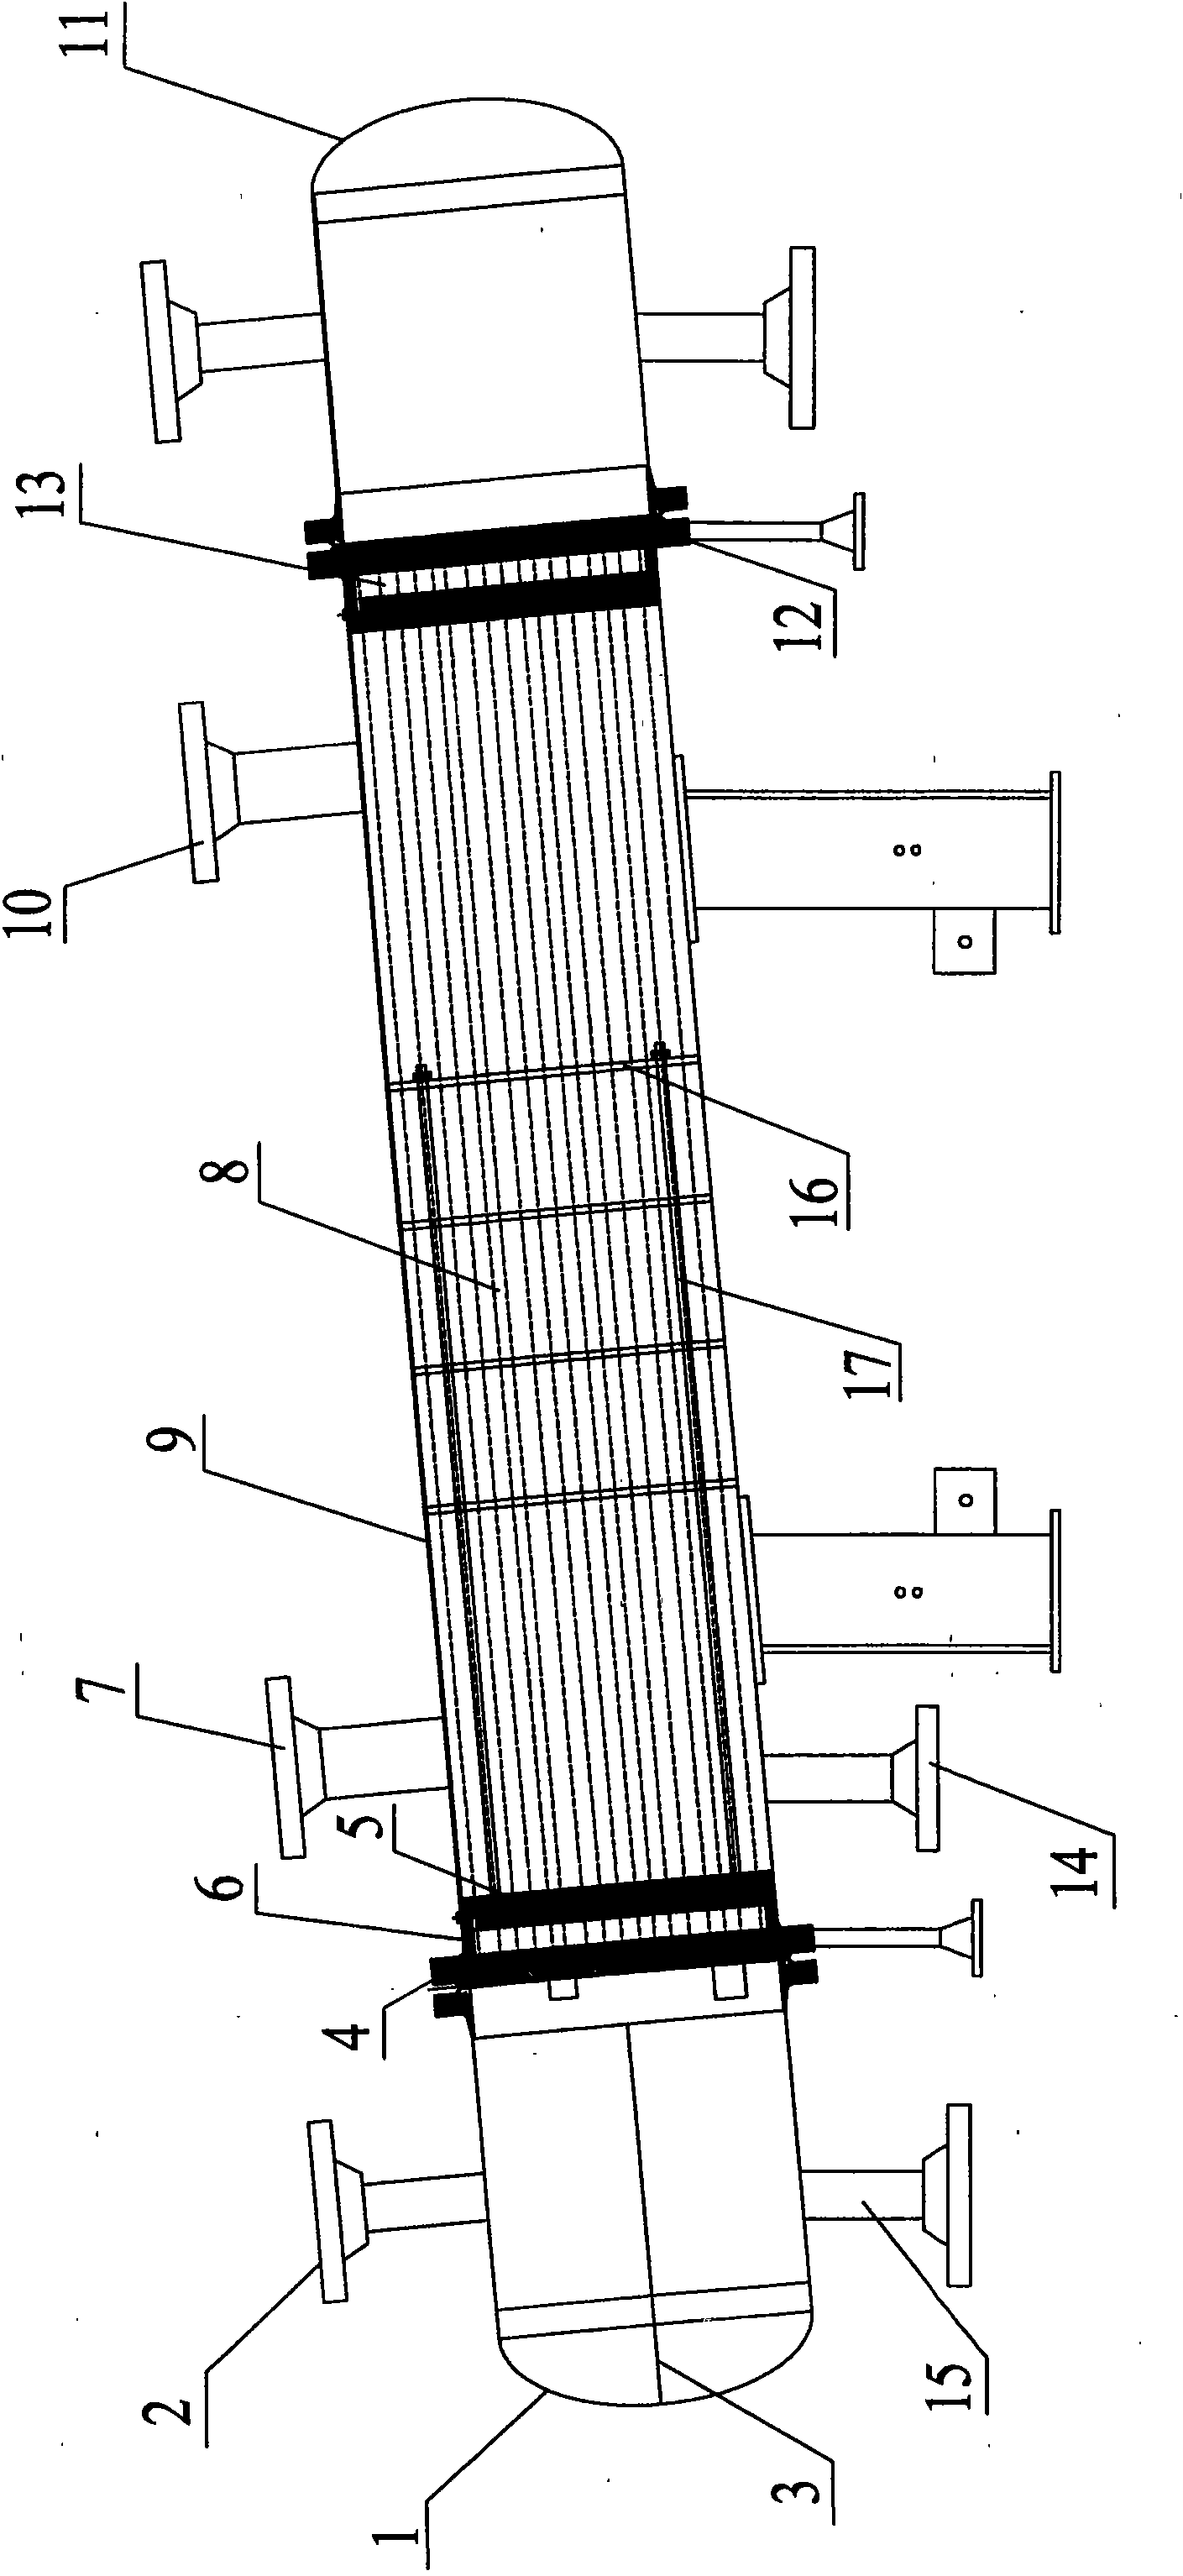 Dual-tubesheet heat interchanger